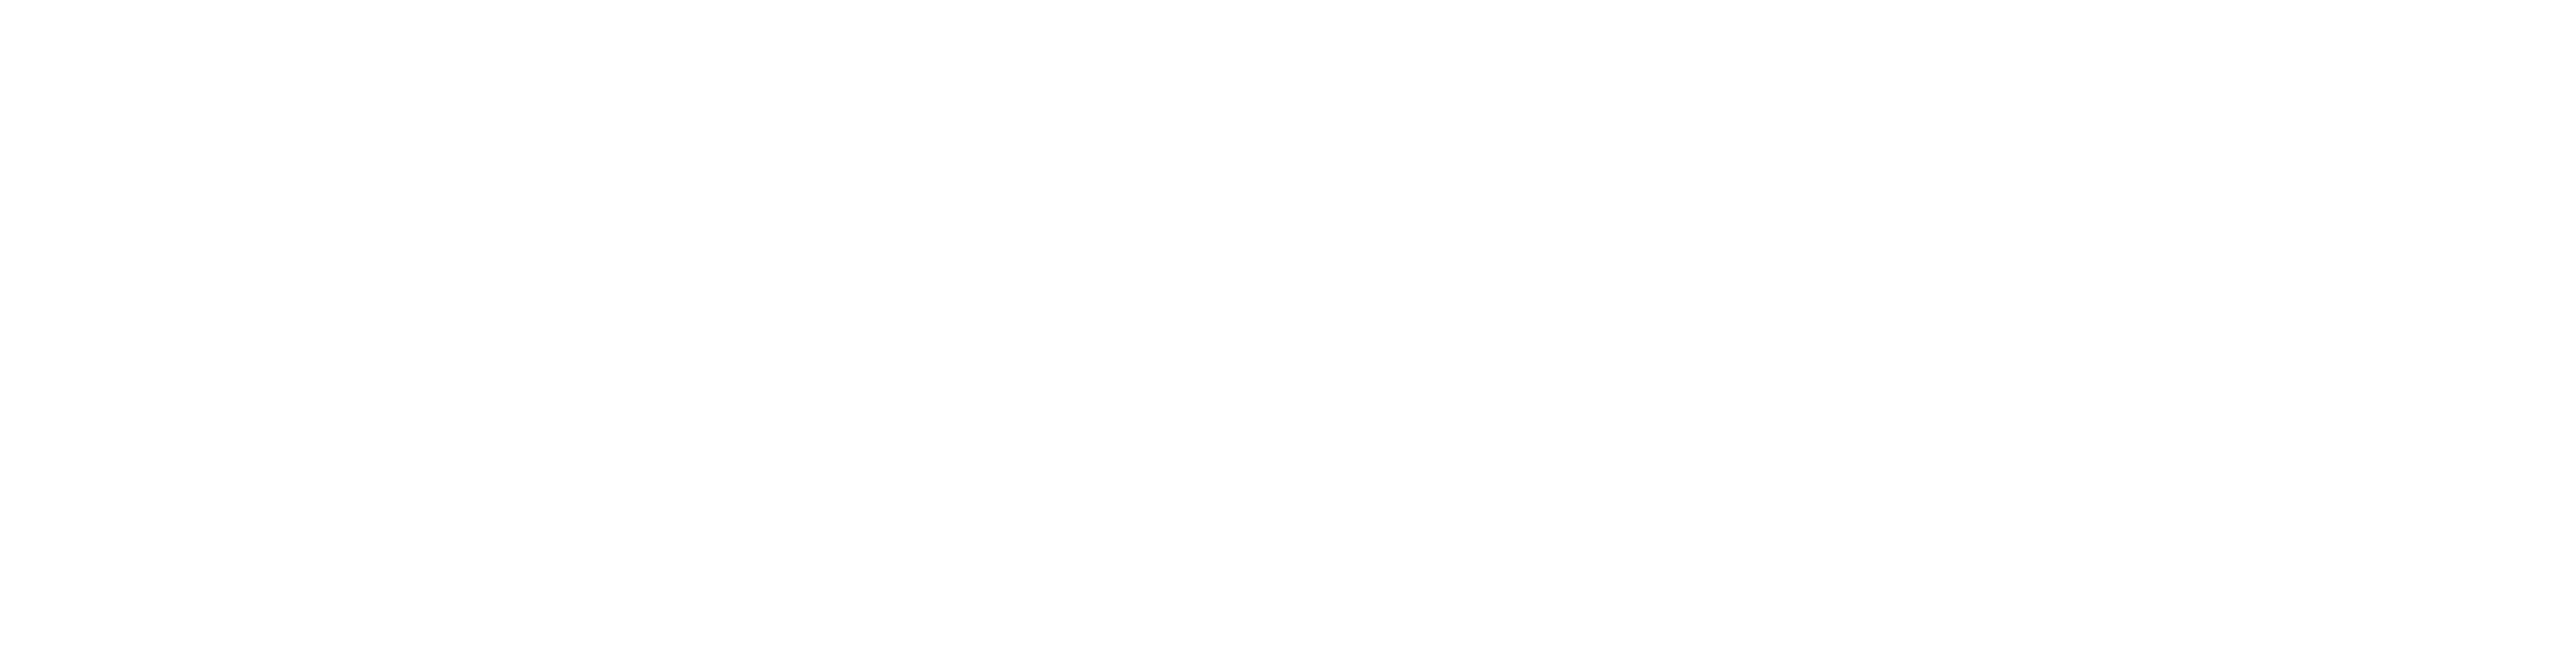 JumboTours